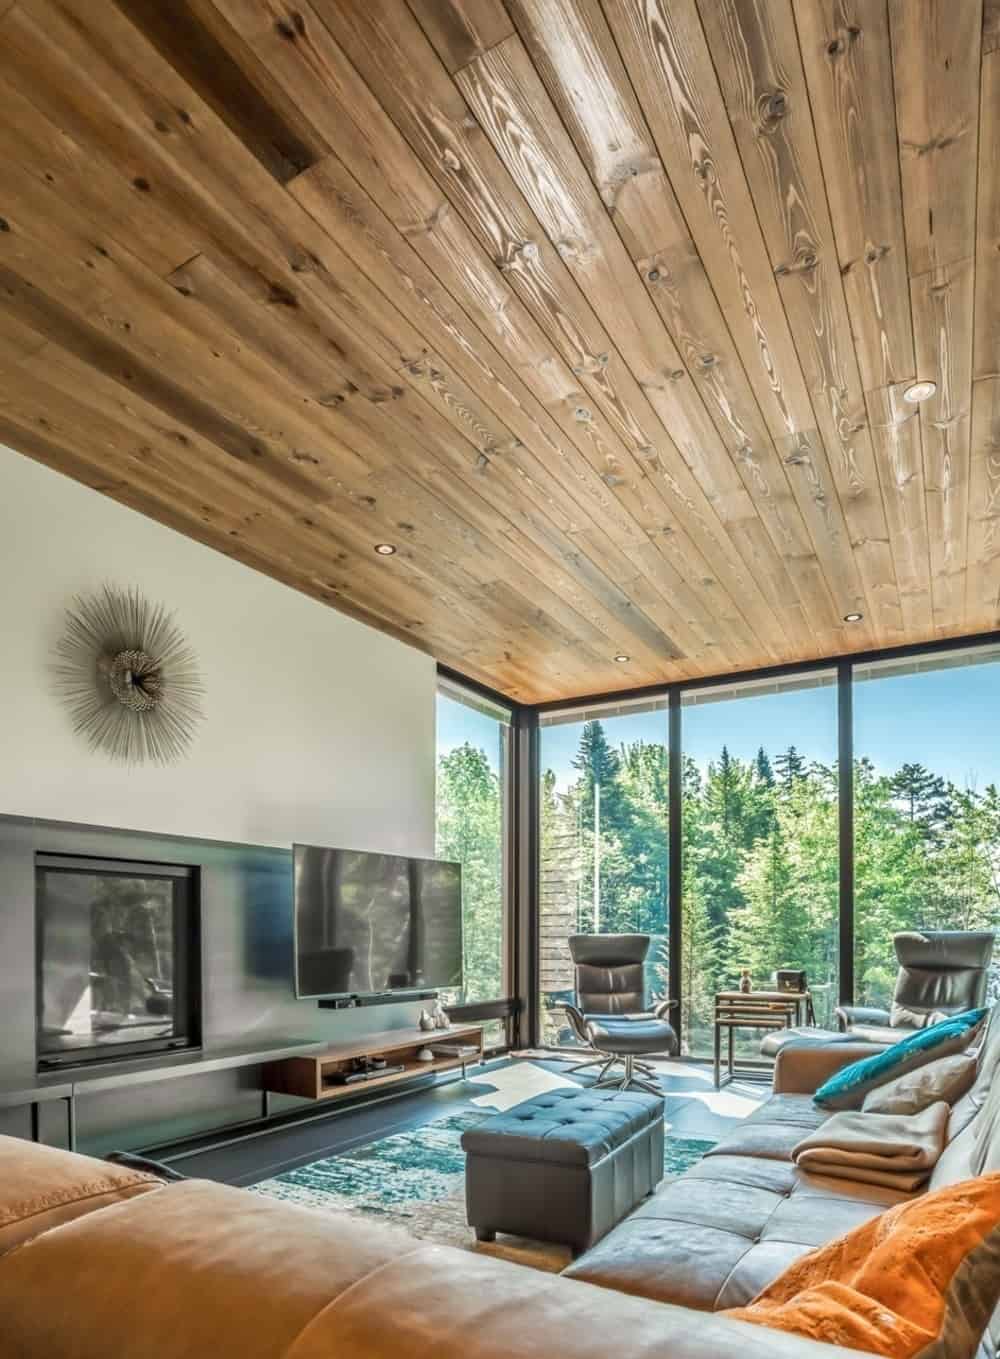 再看客厅，沙发和硬木天花板完美融合。图片来源:Dominic Boudreau